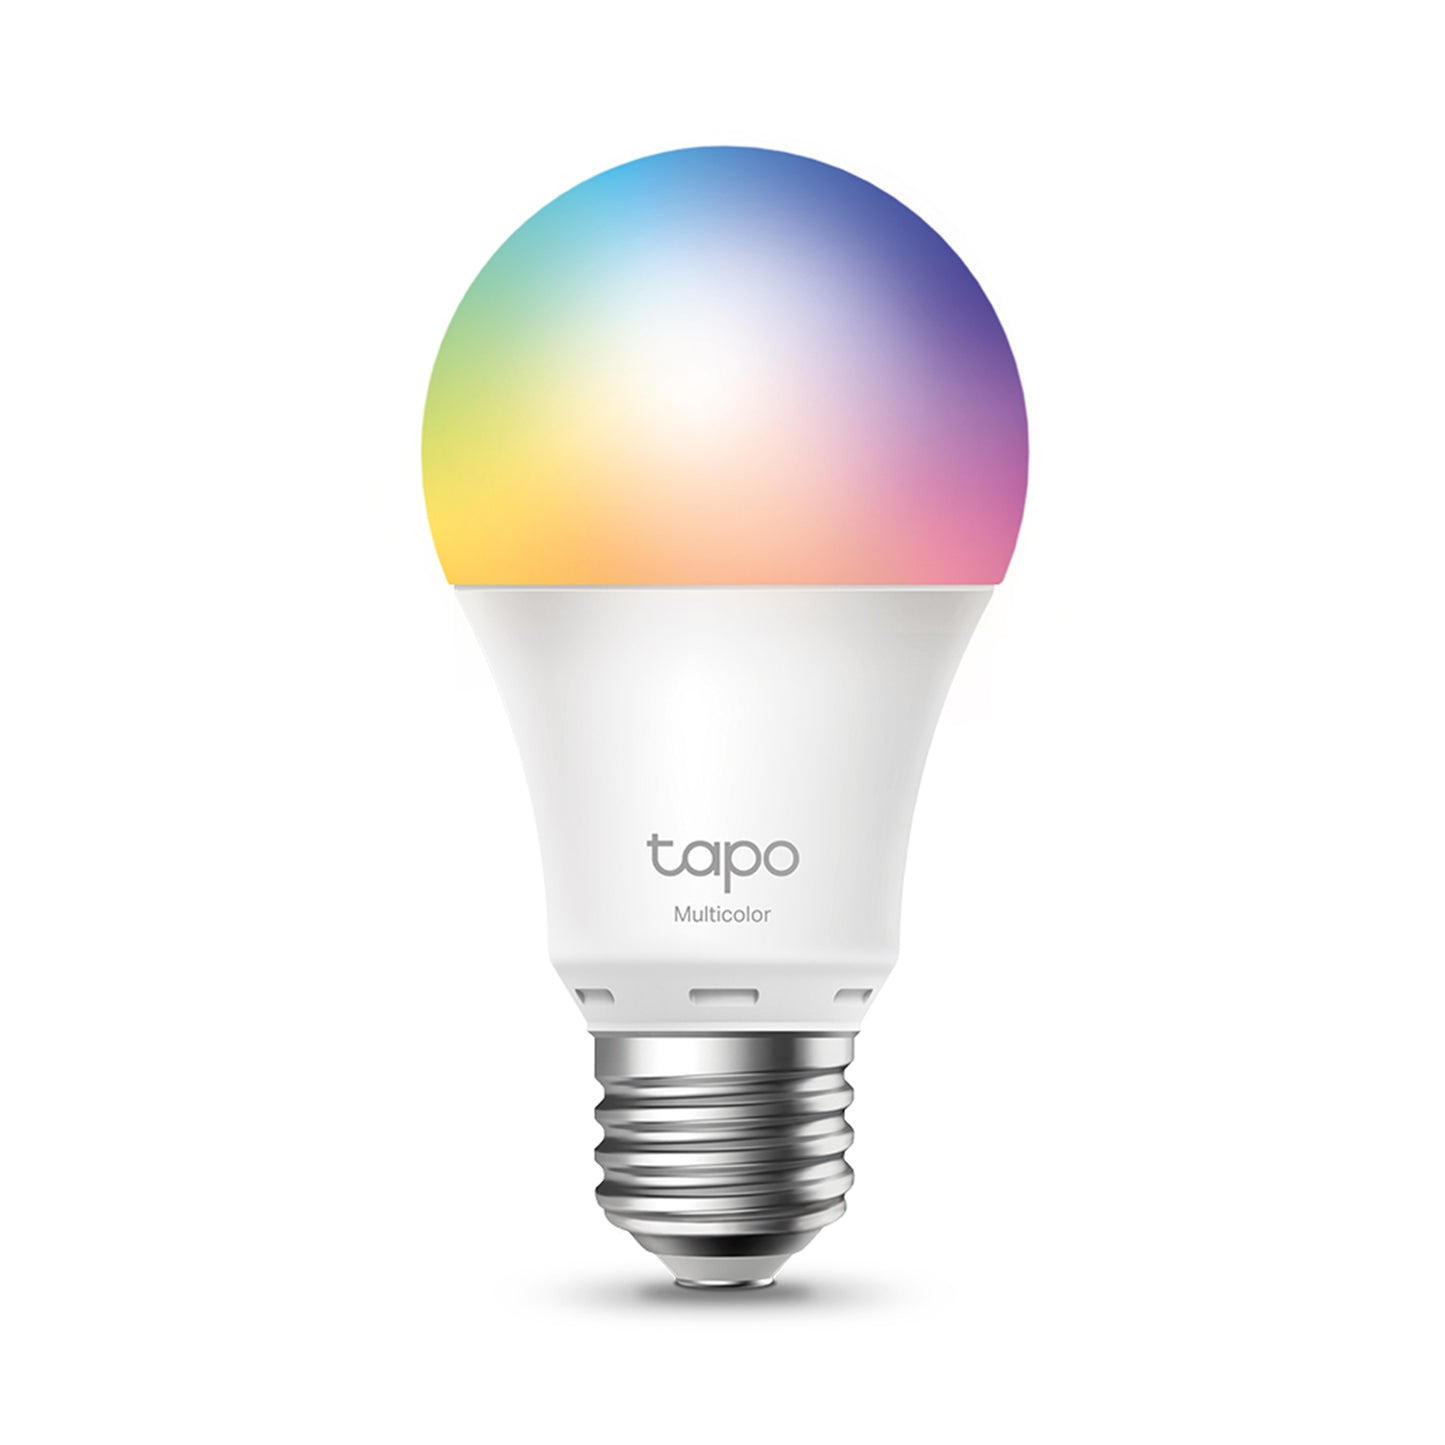 TP-LINK Tapo L530E Multicolor Smart Wifi Light Bulb - White